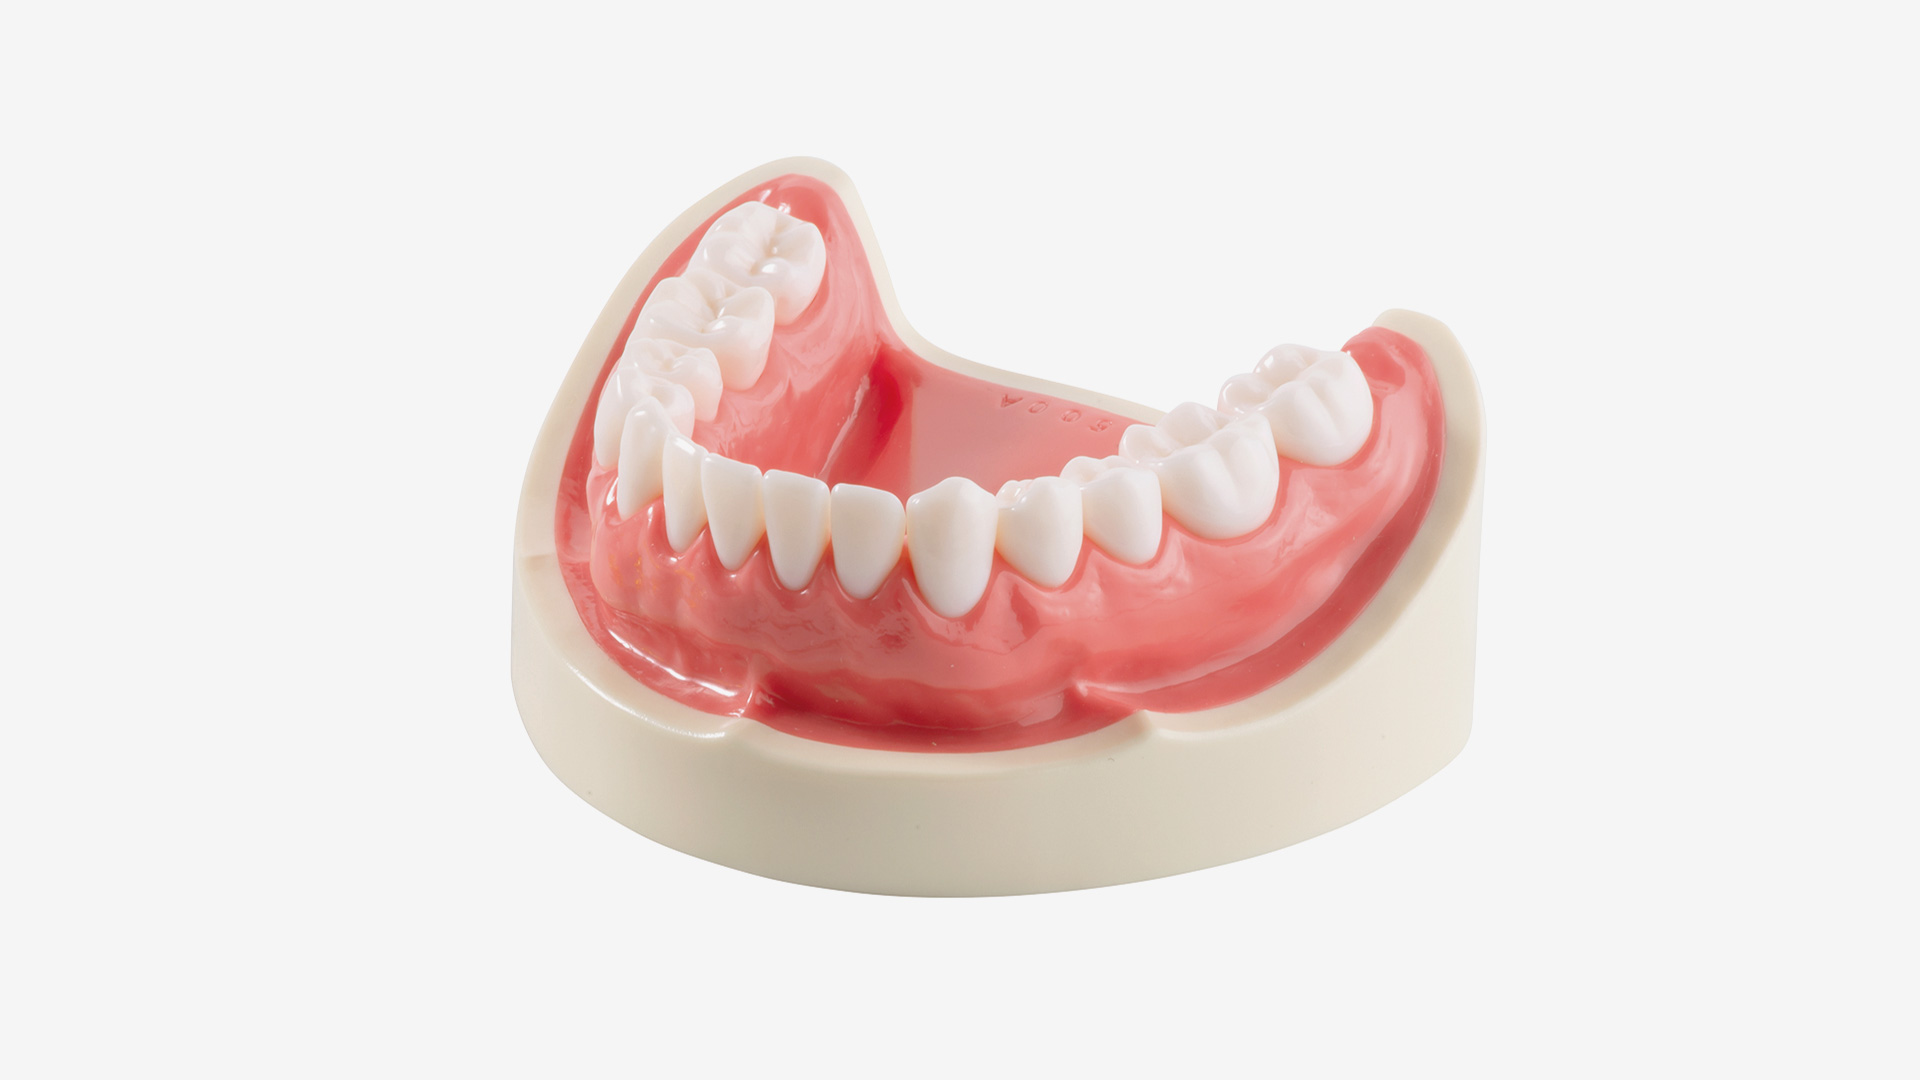 Basismodell E50H-500 AL, UK mit hartem pinkfarbenen Zahnfleisch, mit verschraubten Zähnen